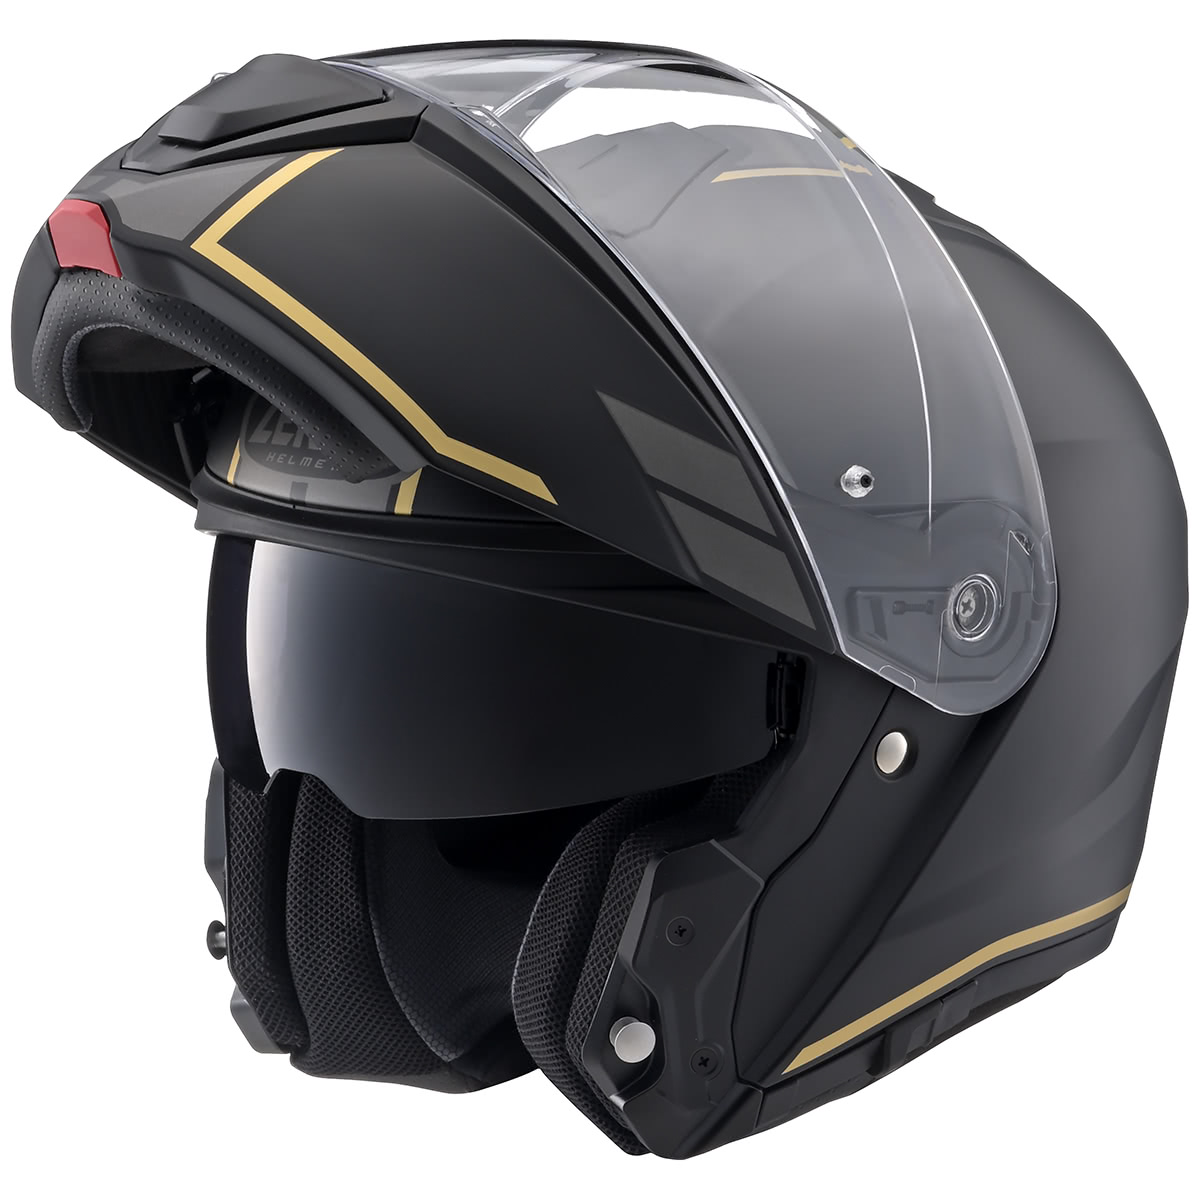 フルフェイス然としたシステムヘルメットは幅広い車種とマッチする “Y'S GEAR YJ-21 ZENITH Graphic” -  メーカーイチオシヘルメット徹底チェック - タンデムスタイル